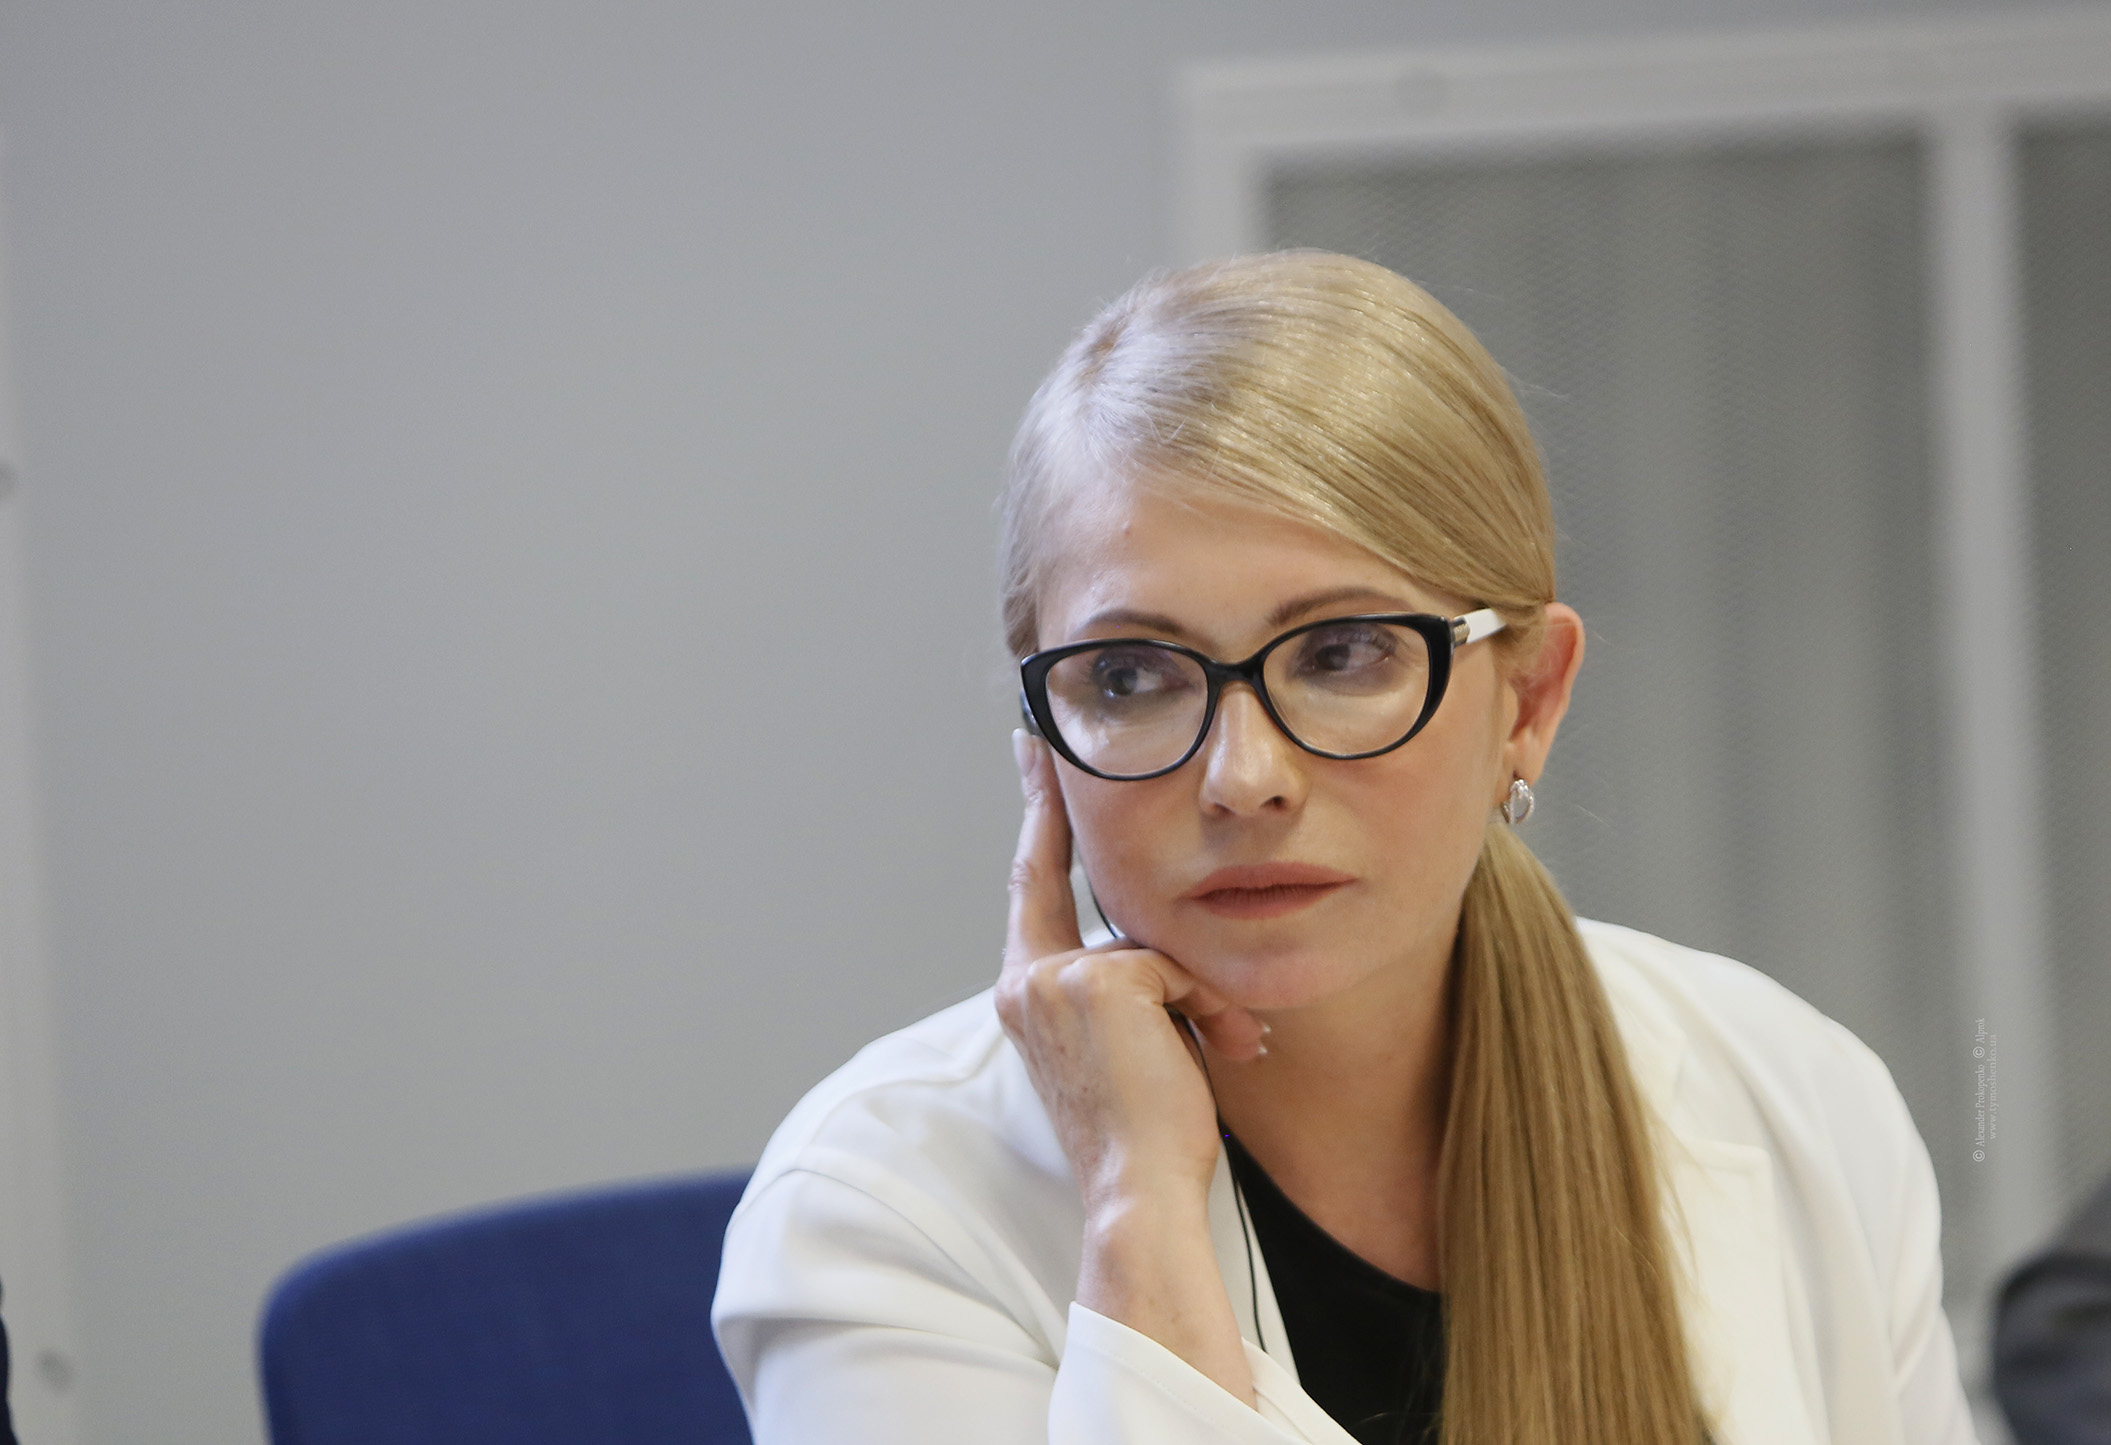 Тимошенко лицемерно поздравила украинцев с созданием Церкви, отказавшись признавать участие Порошенко в этом деле